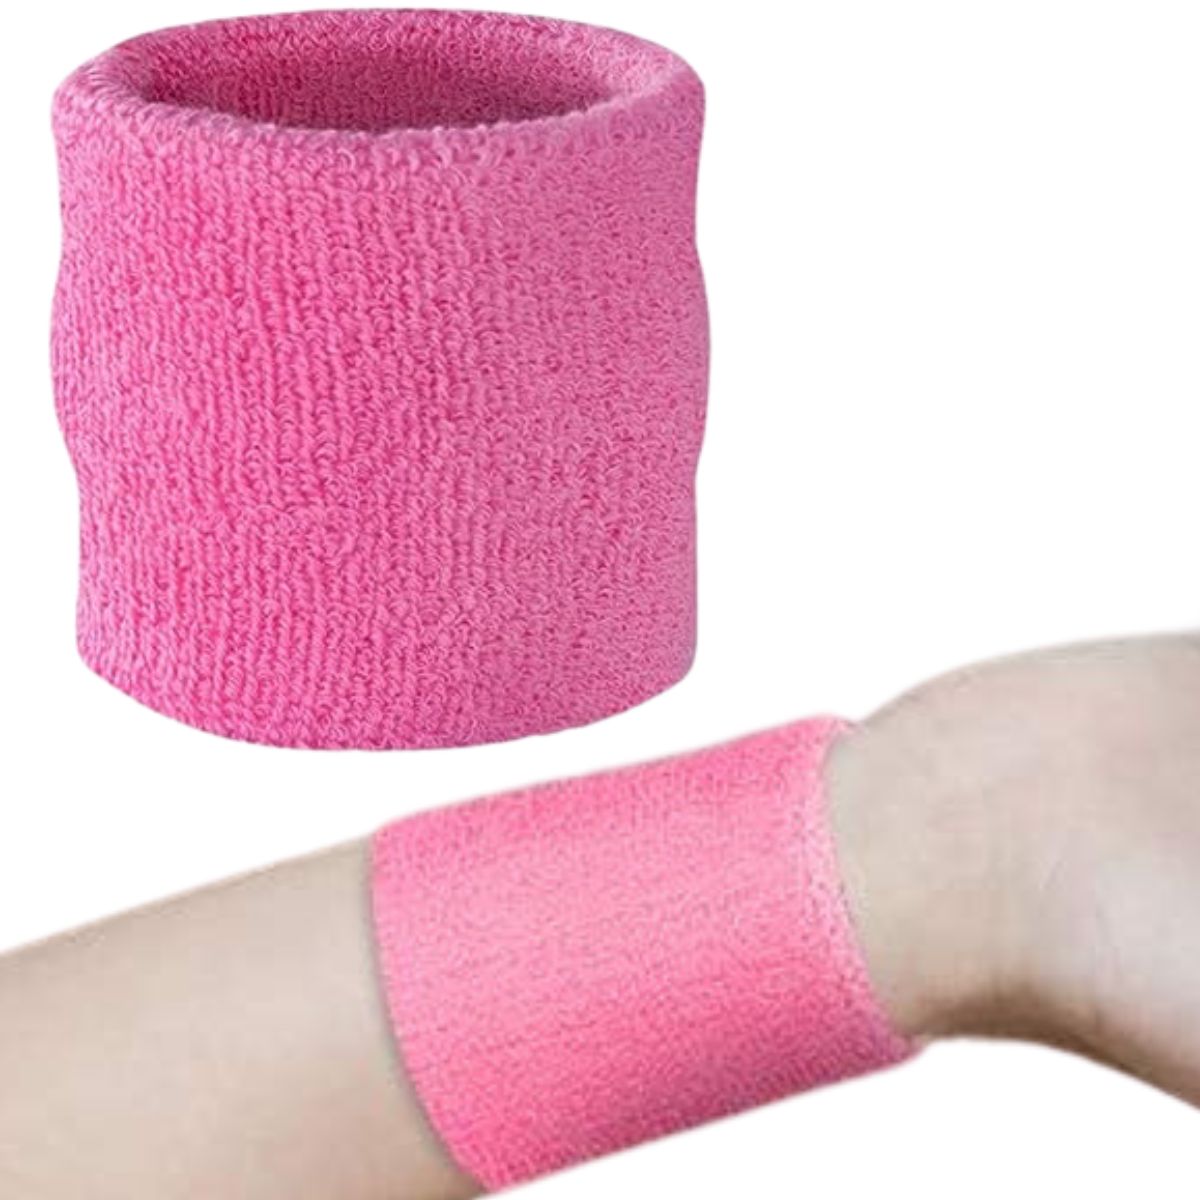 Cotton Wrist Sweat Band : Pink (Pack of 2)